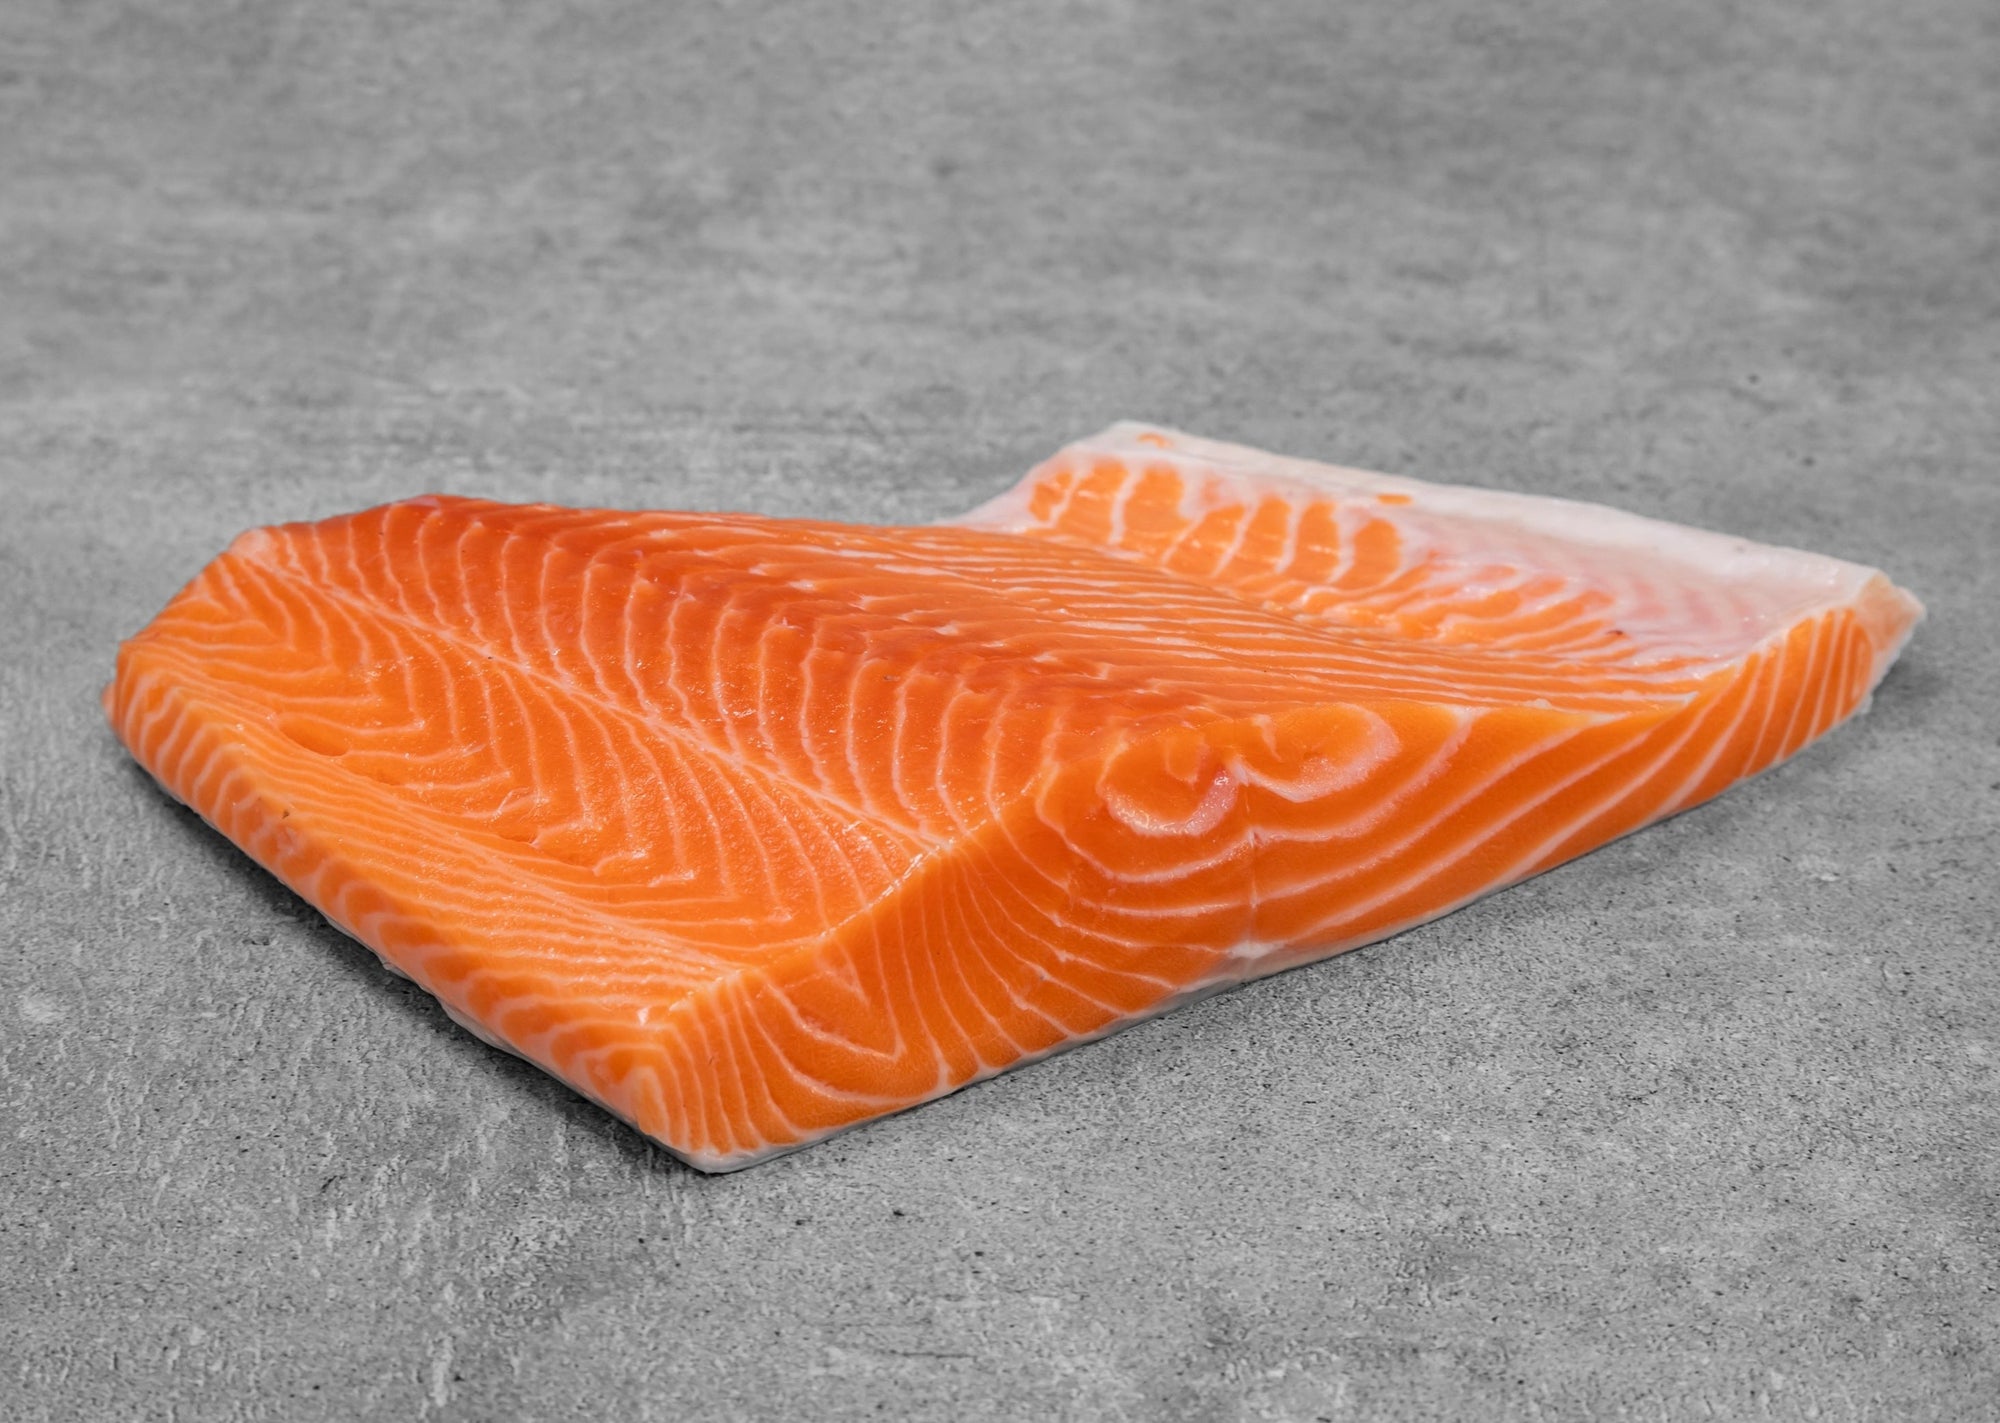 Fresh Ora King Salmon Whole or Fillet